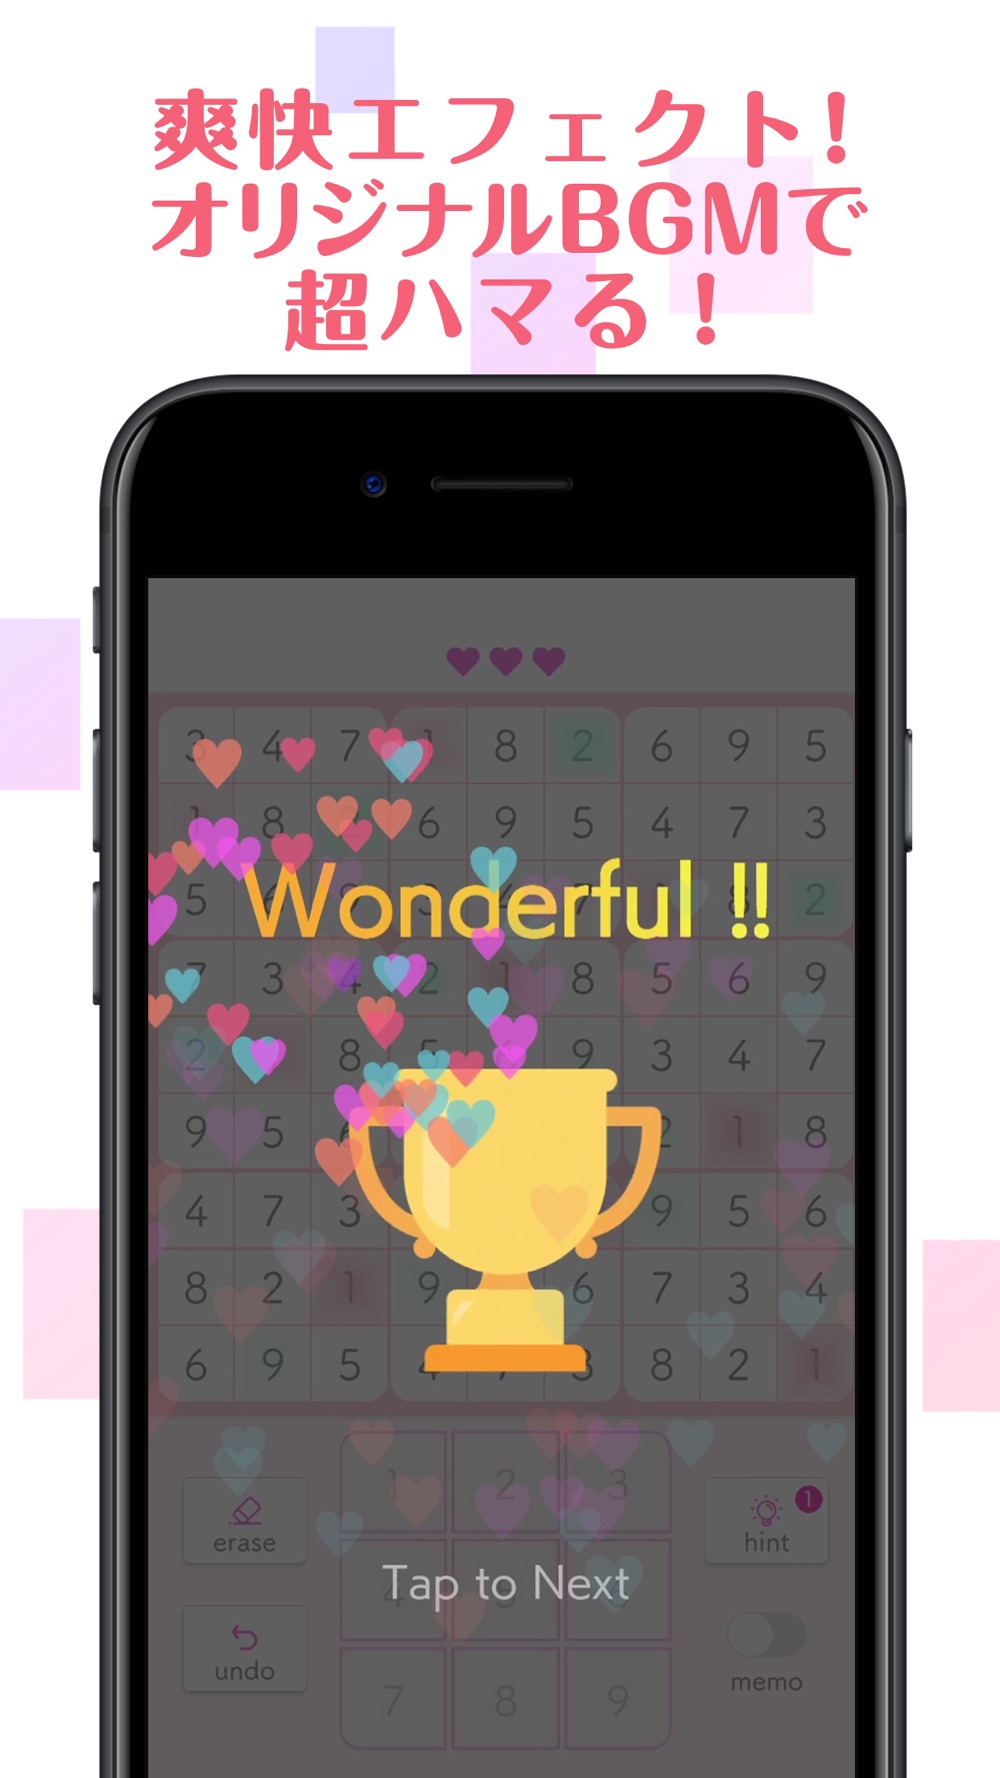 ナンプレ 人気の数字を使ったパズルゲーム Free Download App For Iphone Steprimo Com